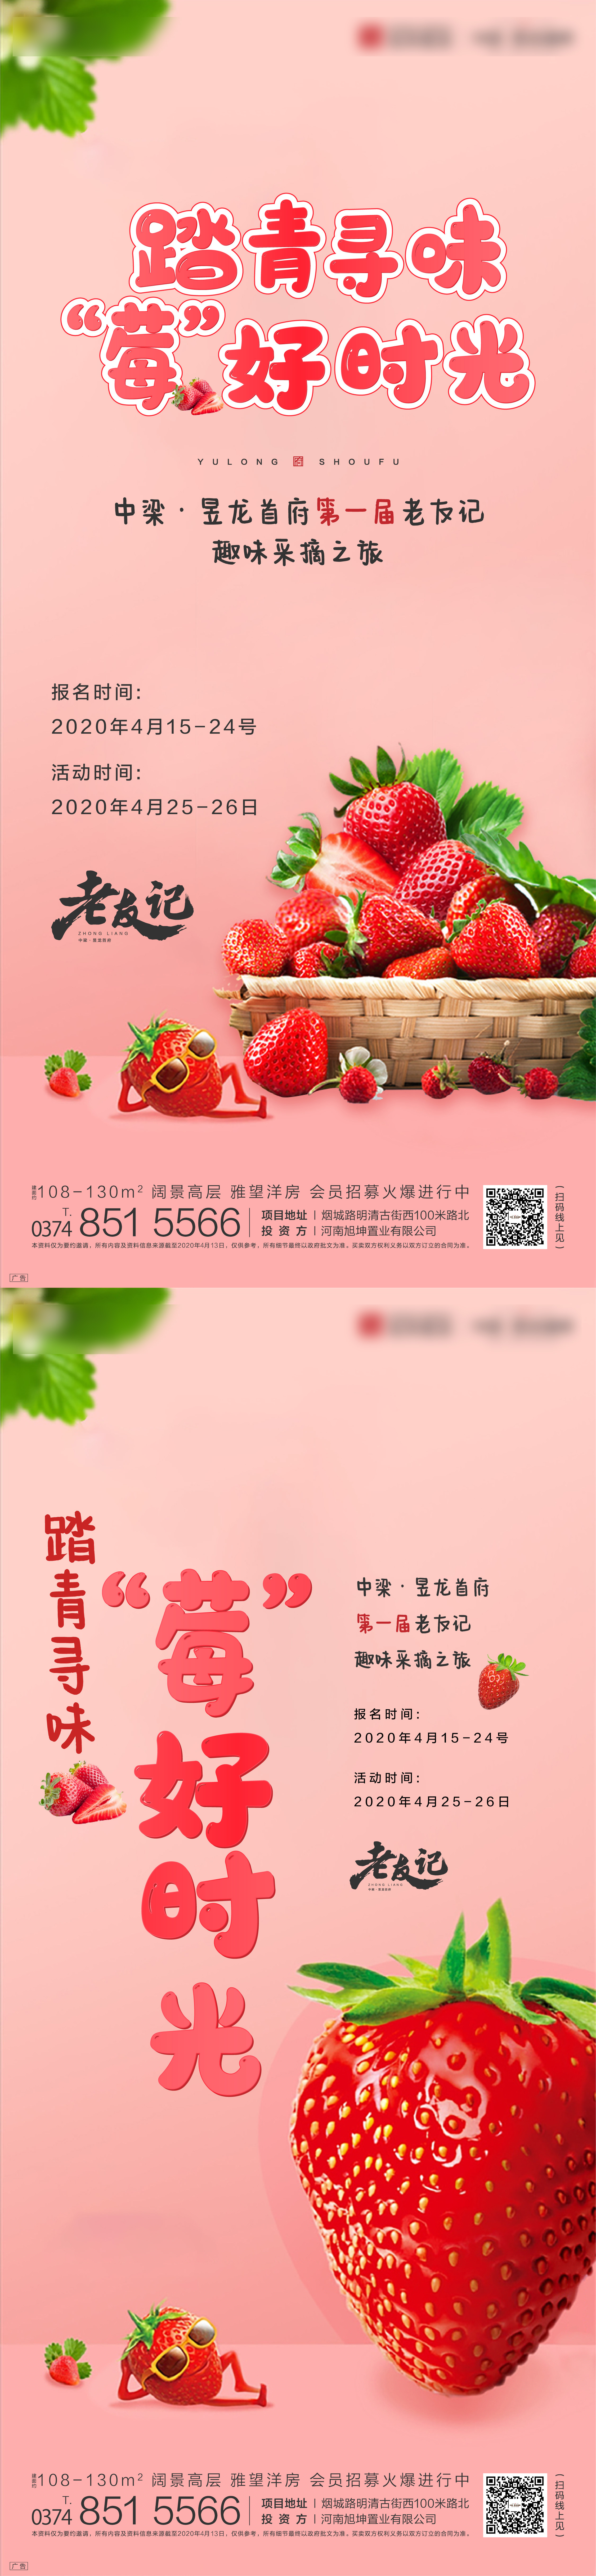 草莓采摘园宣传语广告图片